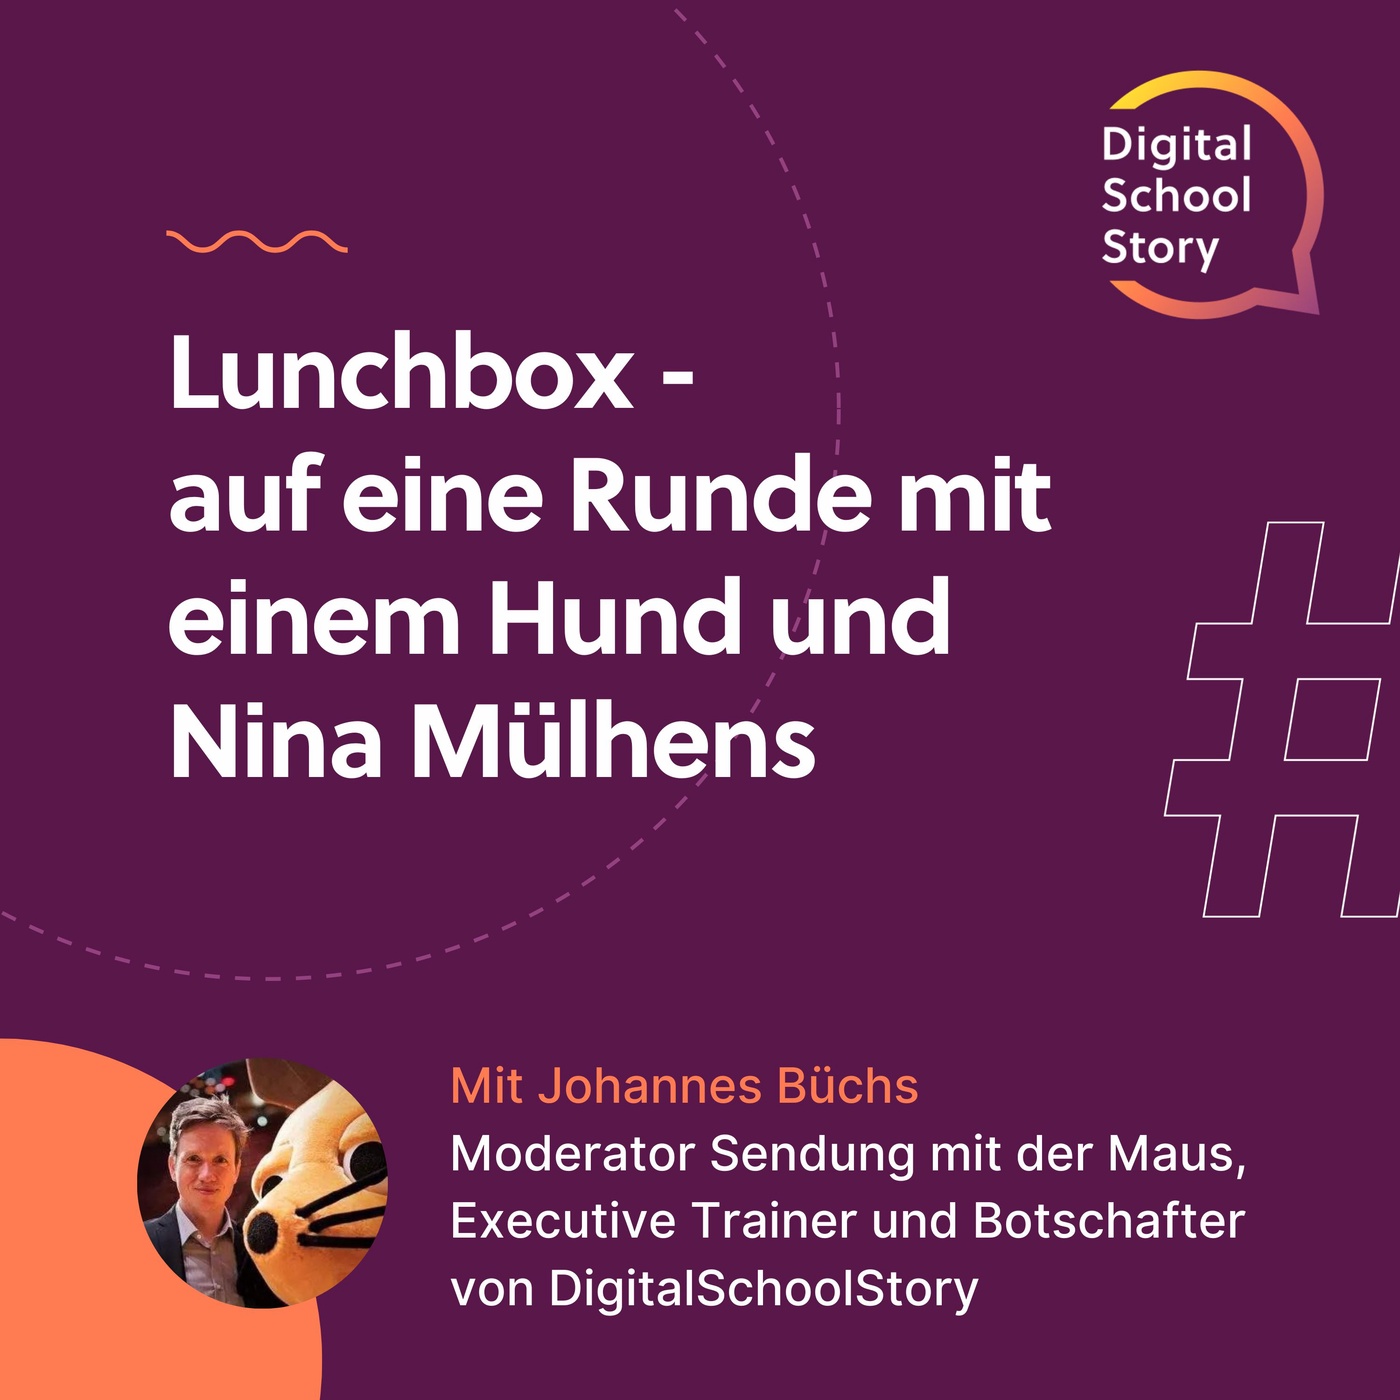 #39 Johannes Büchs bei der #lunchbox